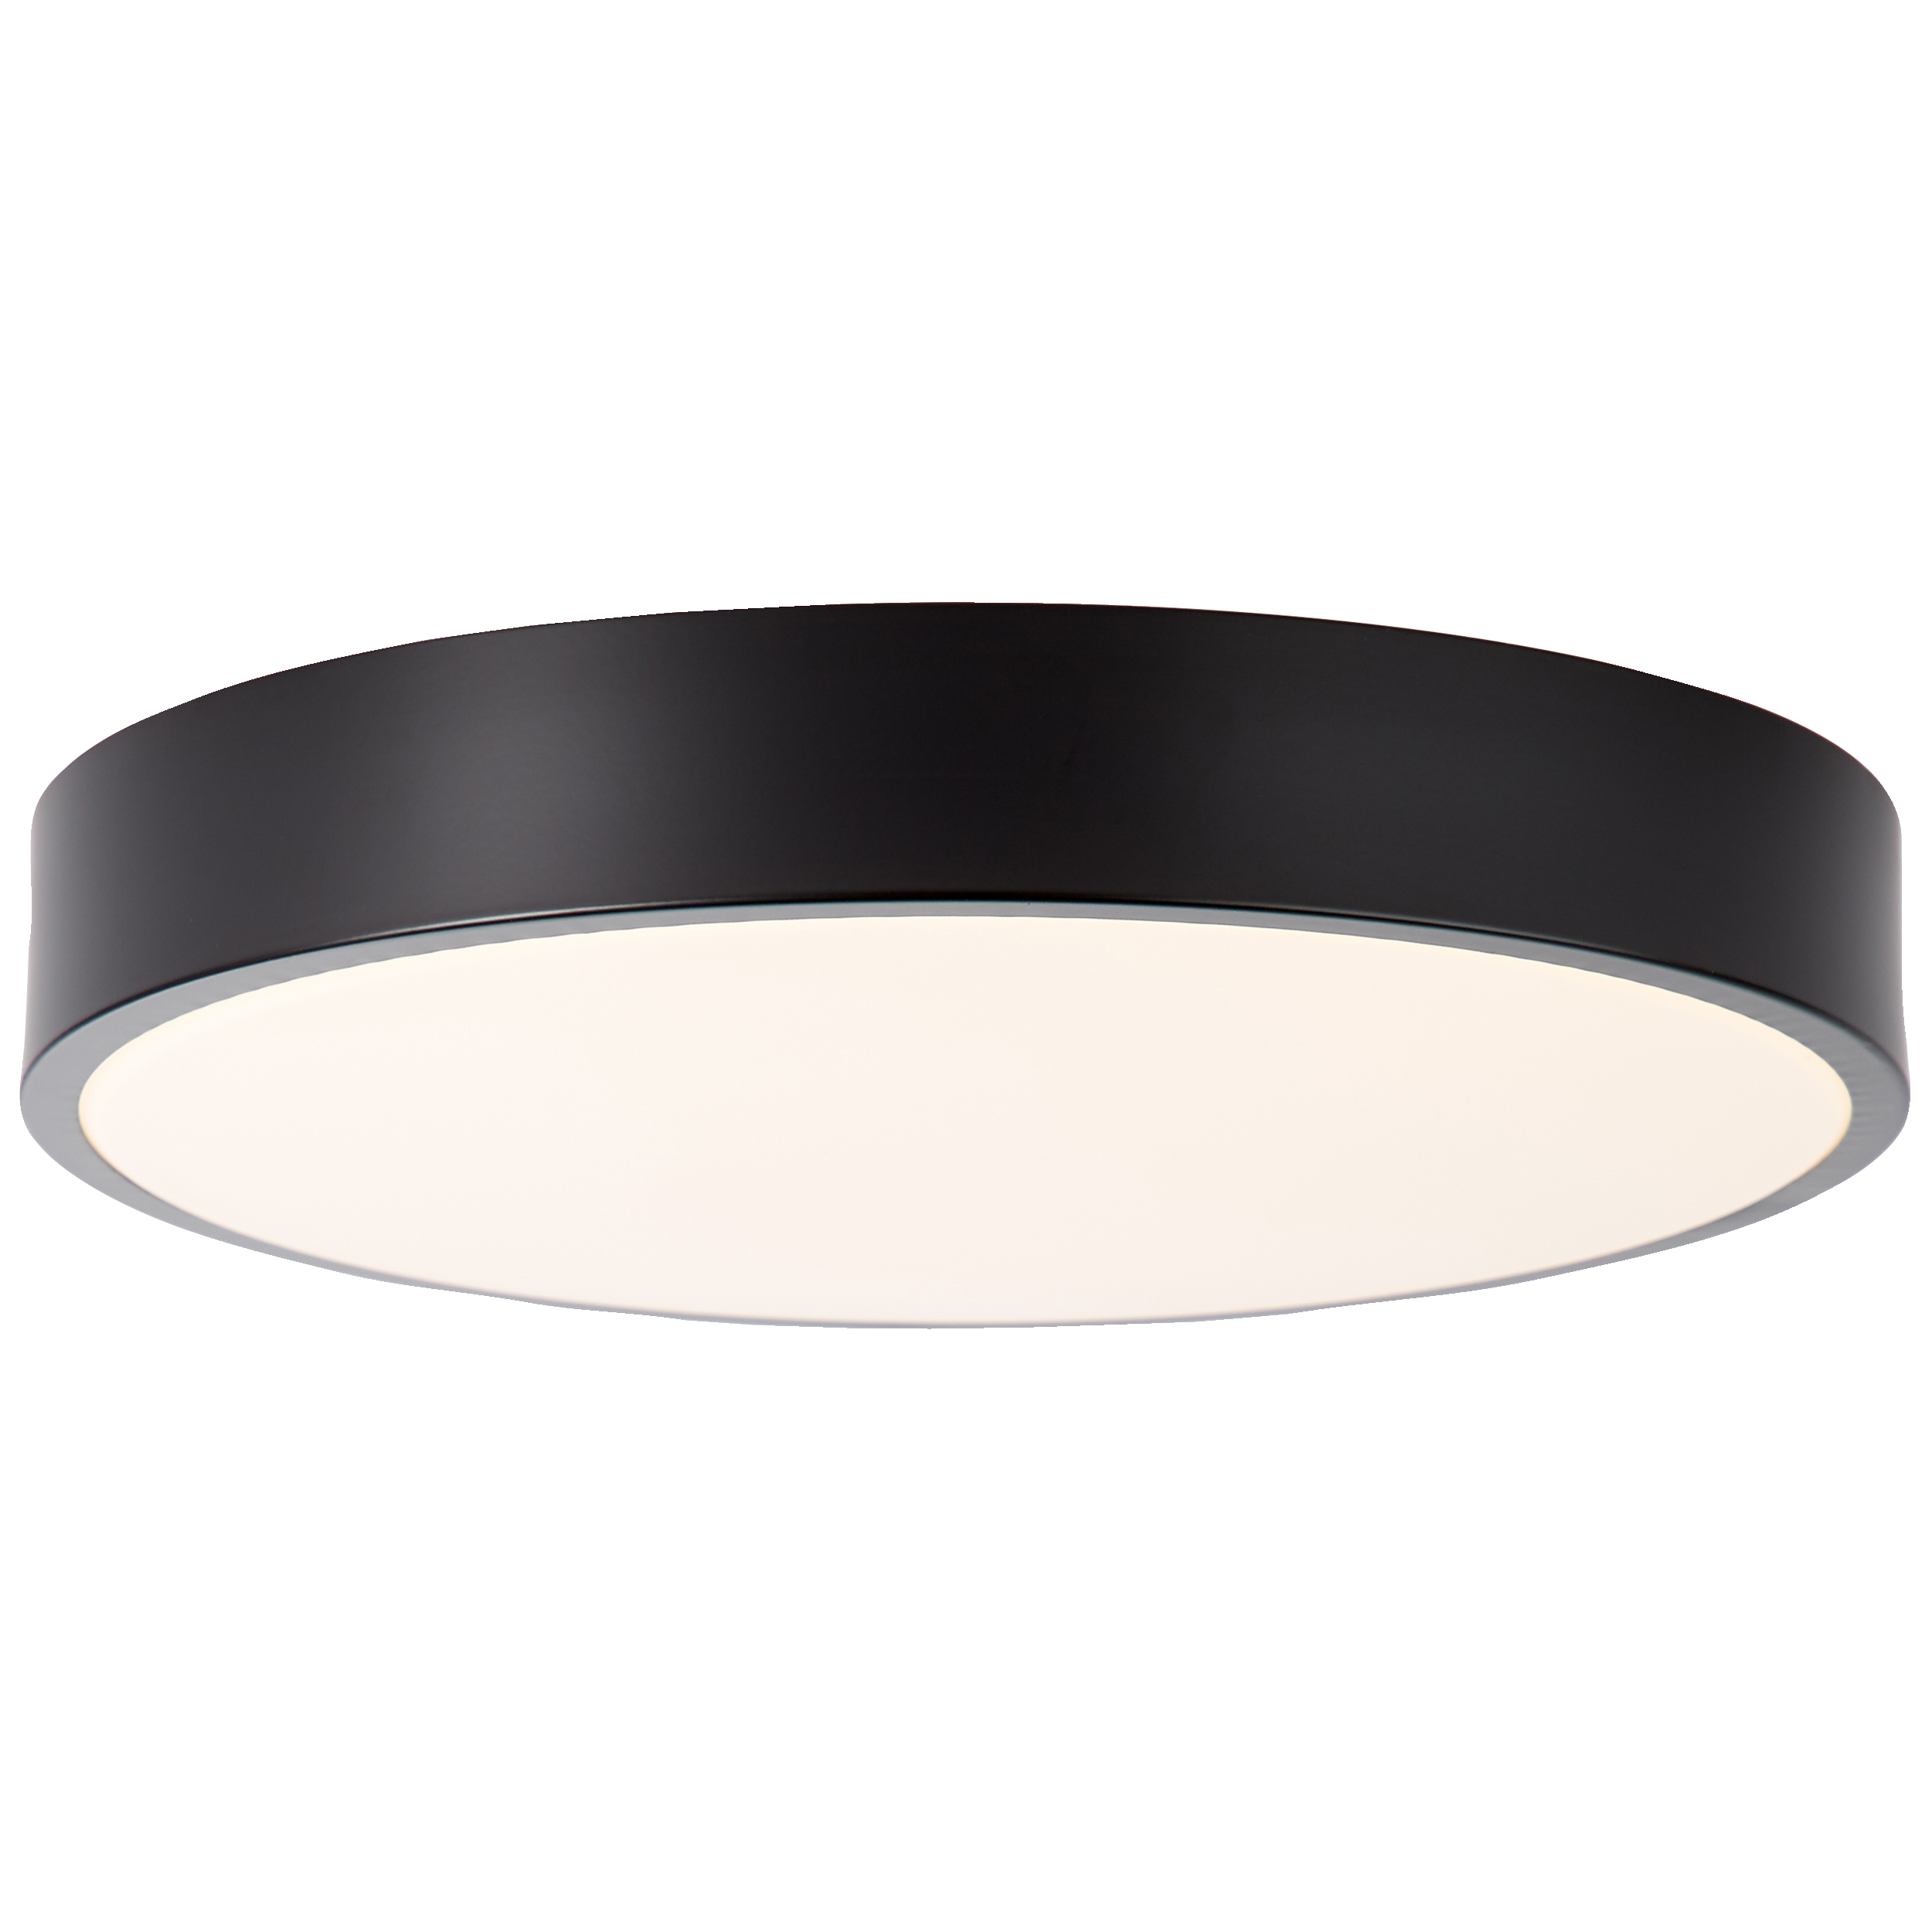 LED Deckenleuchte 33cm weiß/schwarz · Lightbox Leuchten & Licht GmbH